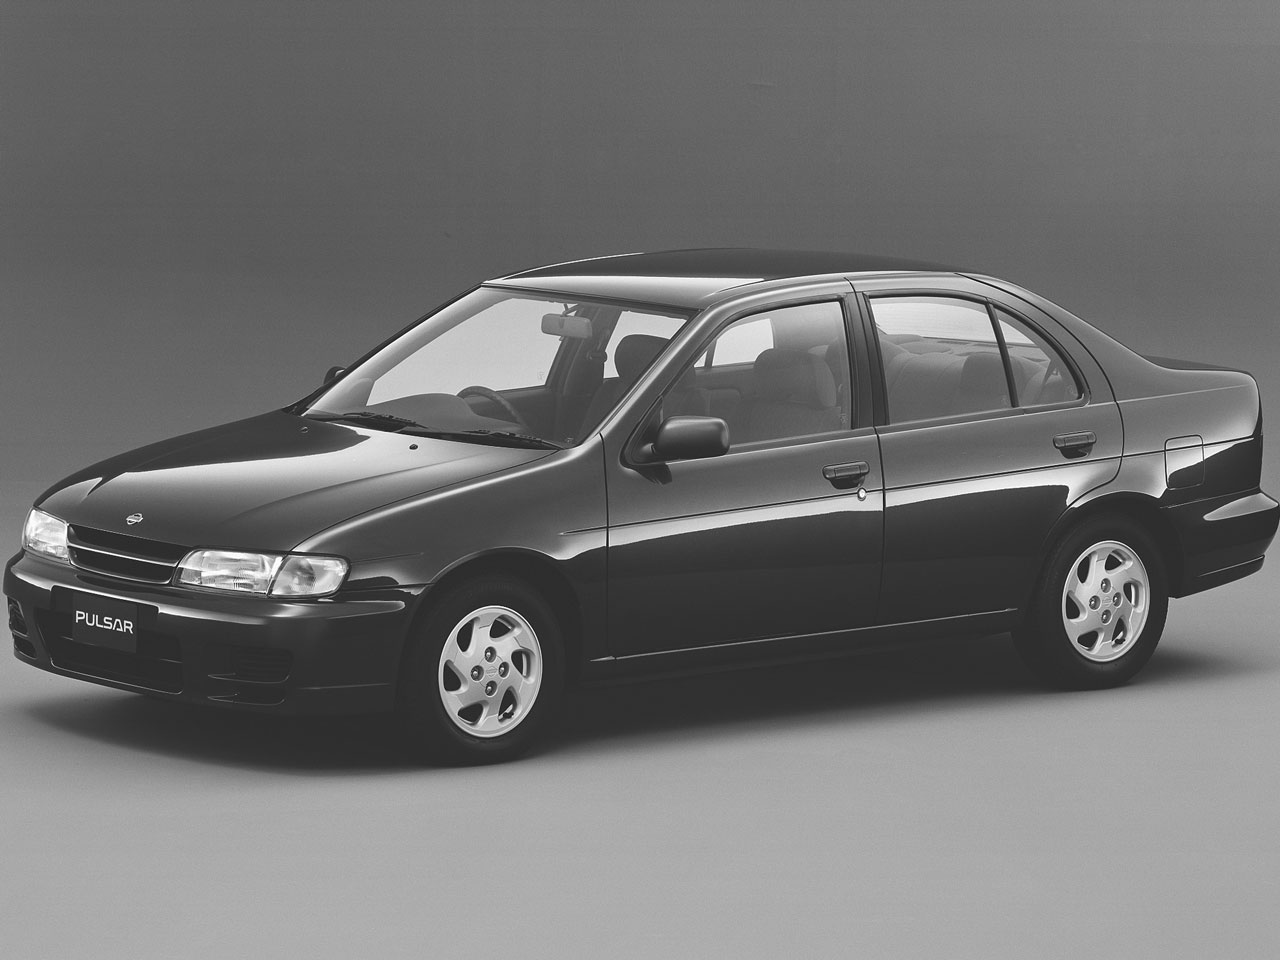 日産 パルサー セダン 1995年モデル 新車画像